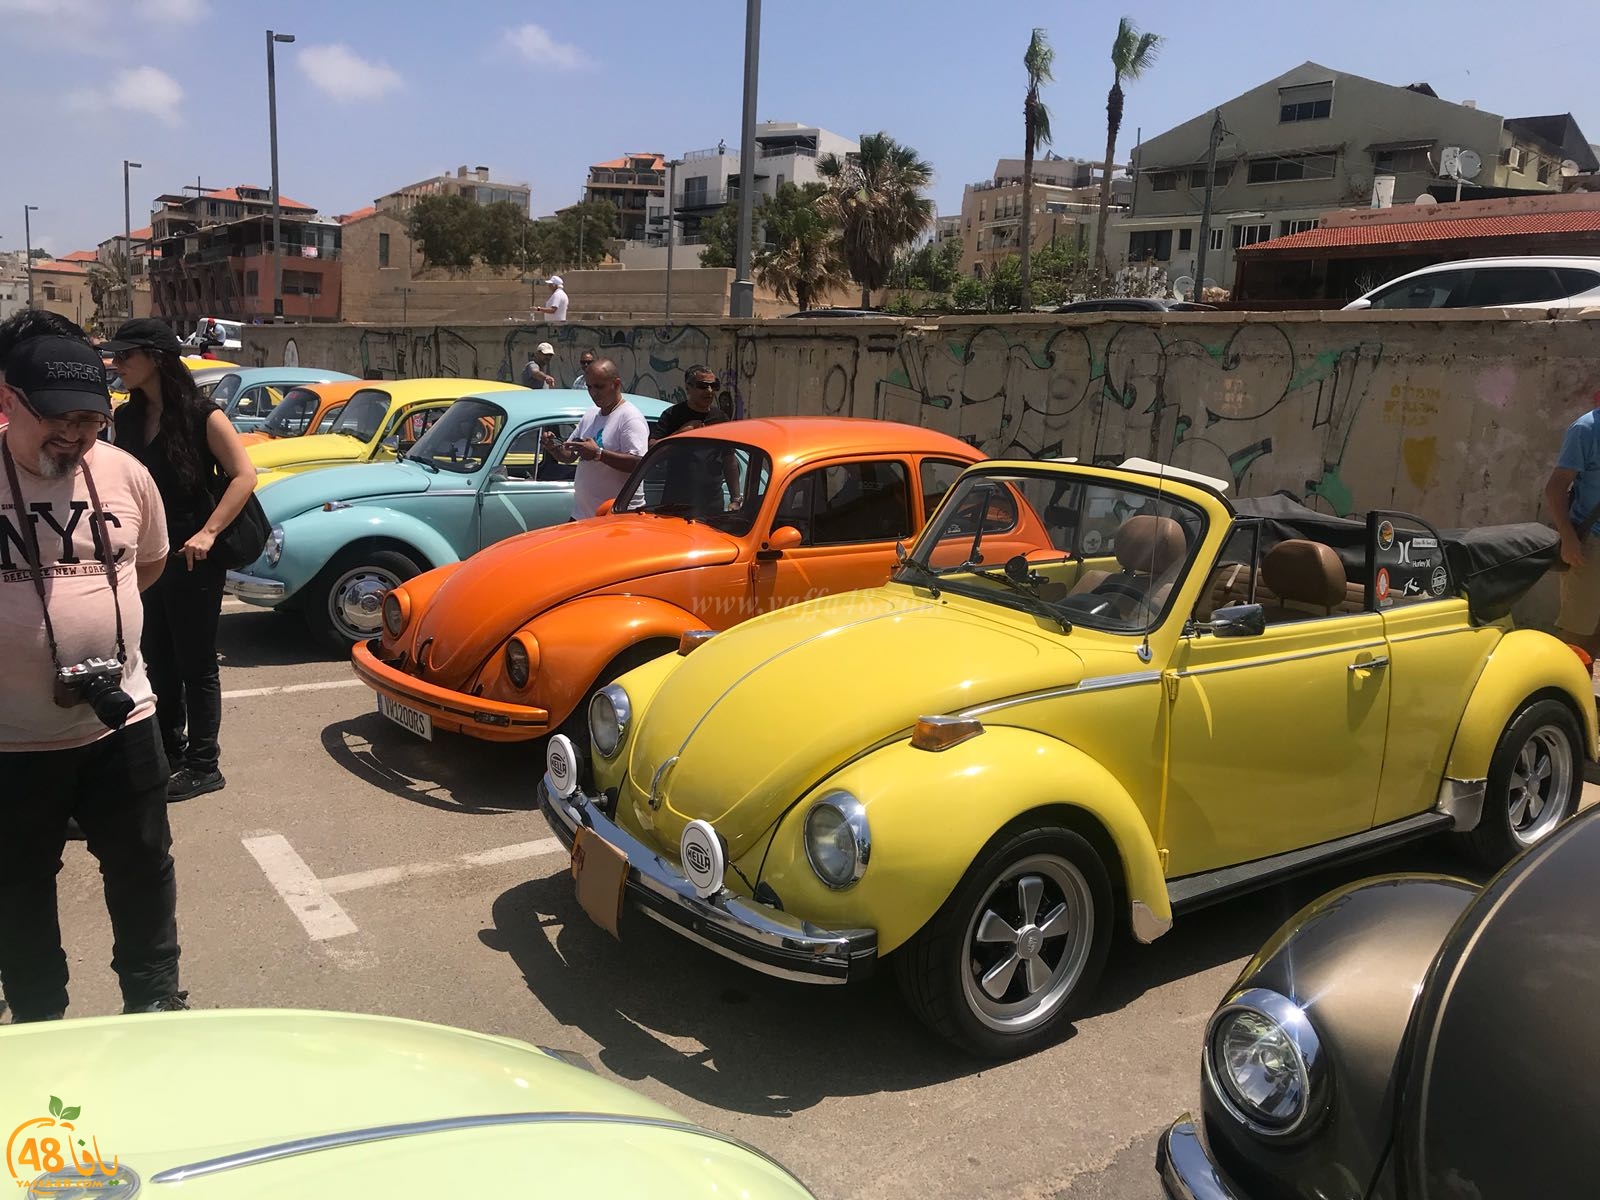  بالفيديو: جنون السيارات - معرض للسيارات الكلاسيكية في ميناء يافا 